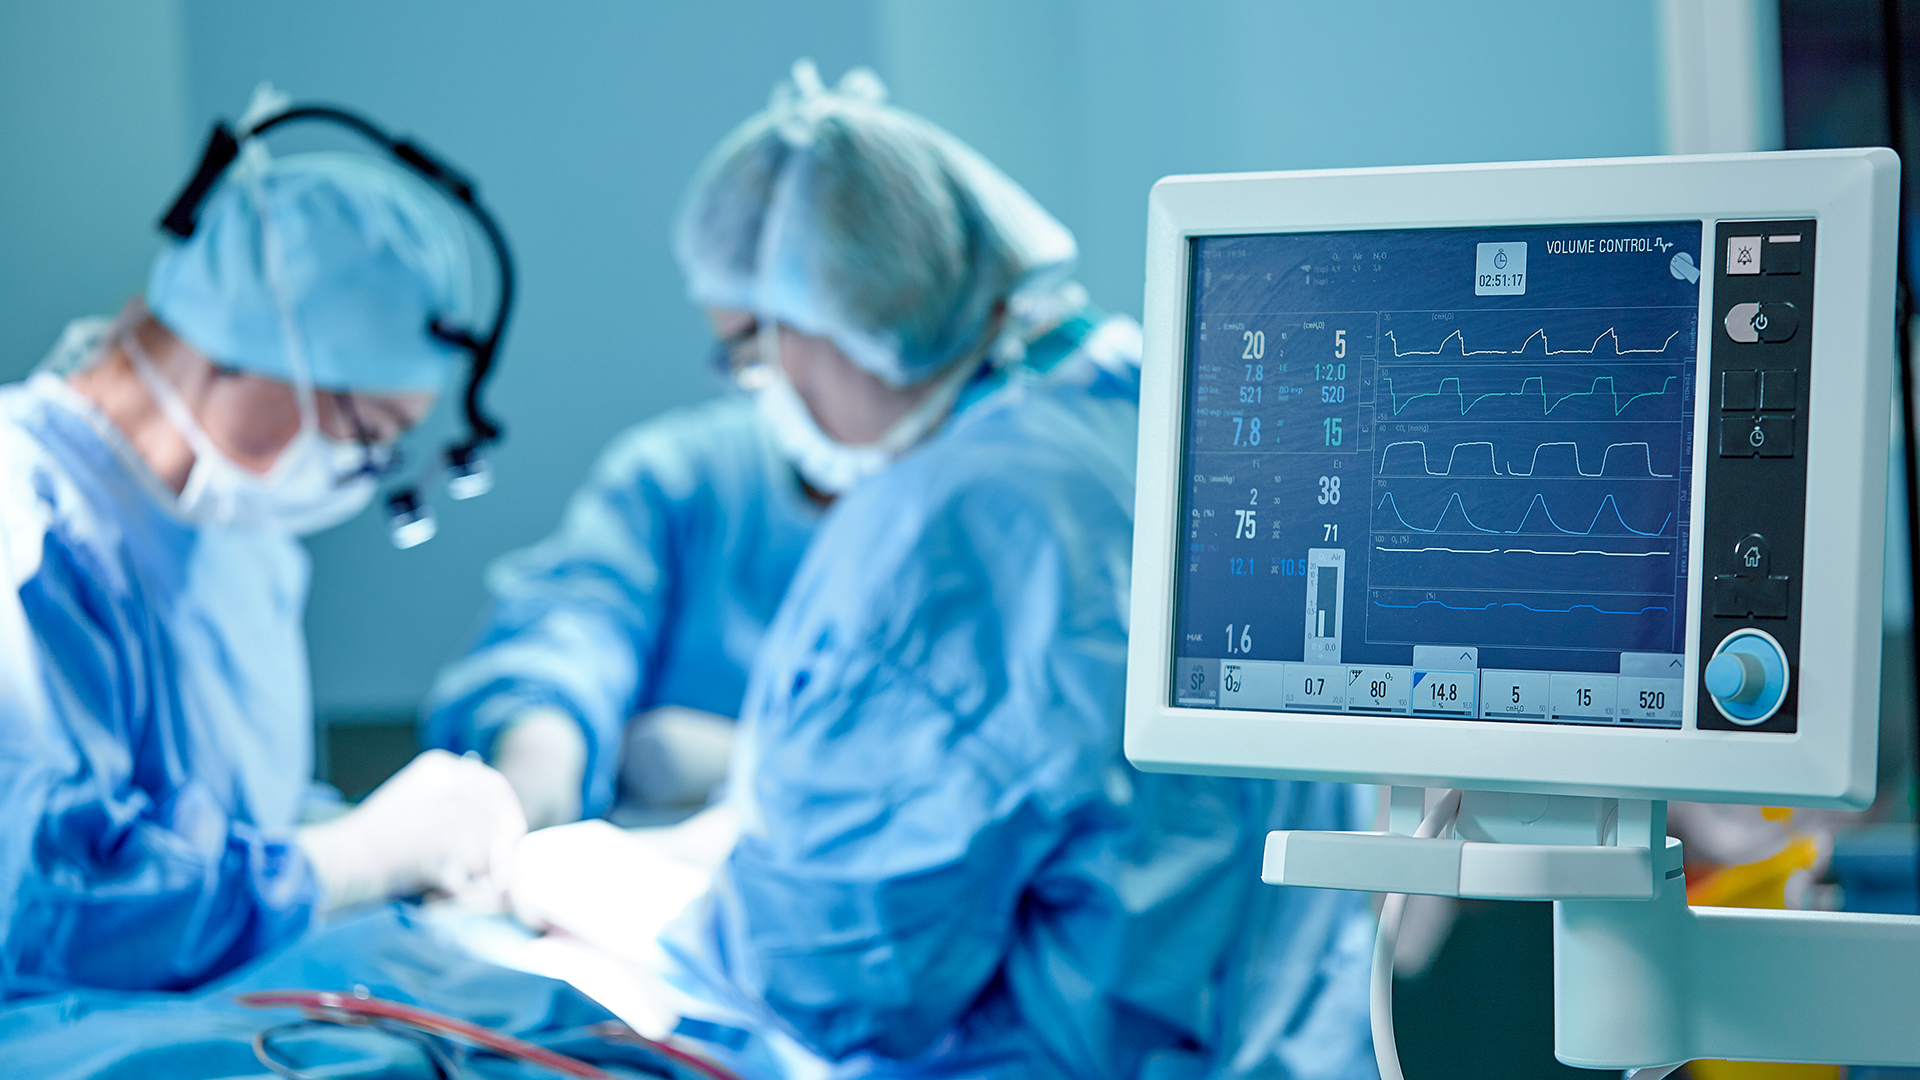 Equipamento exibe sinais vitais do paciente durante operação cirúrgica